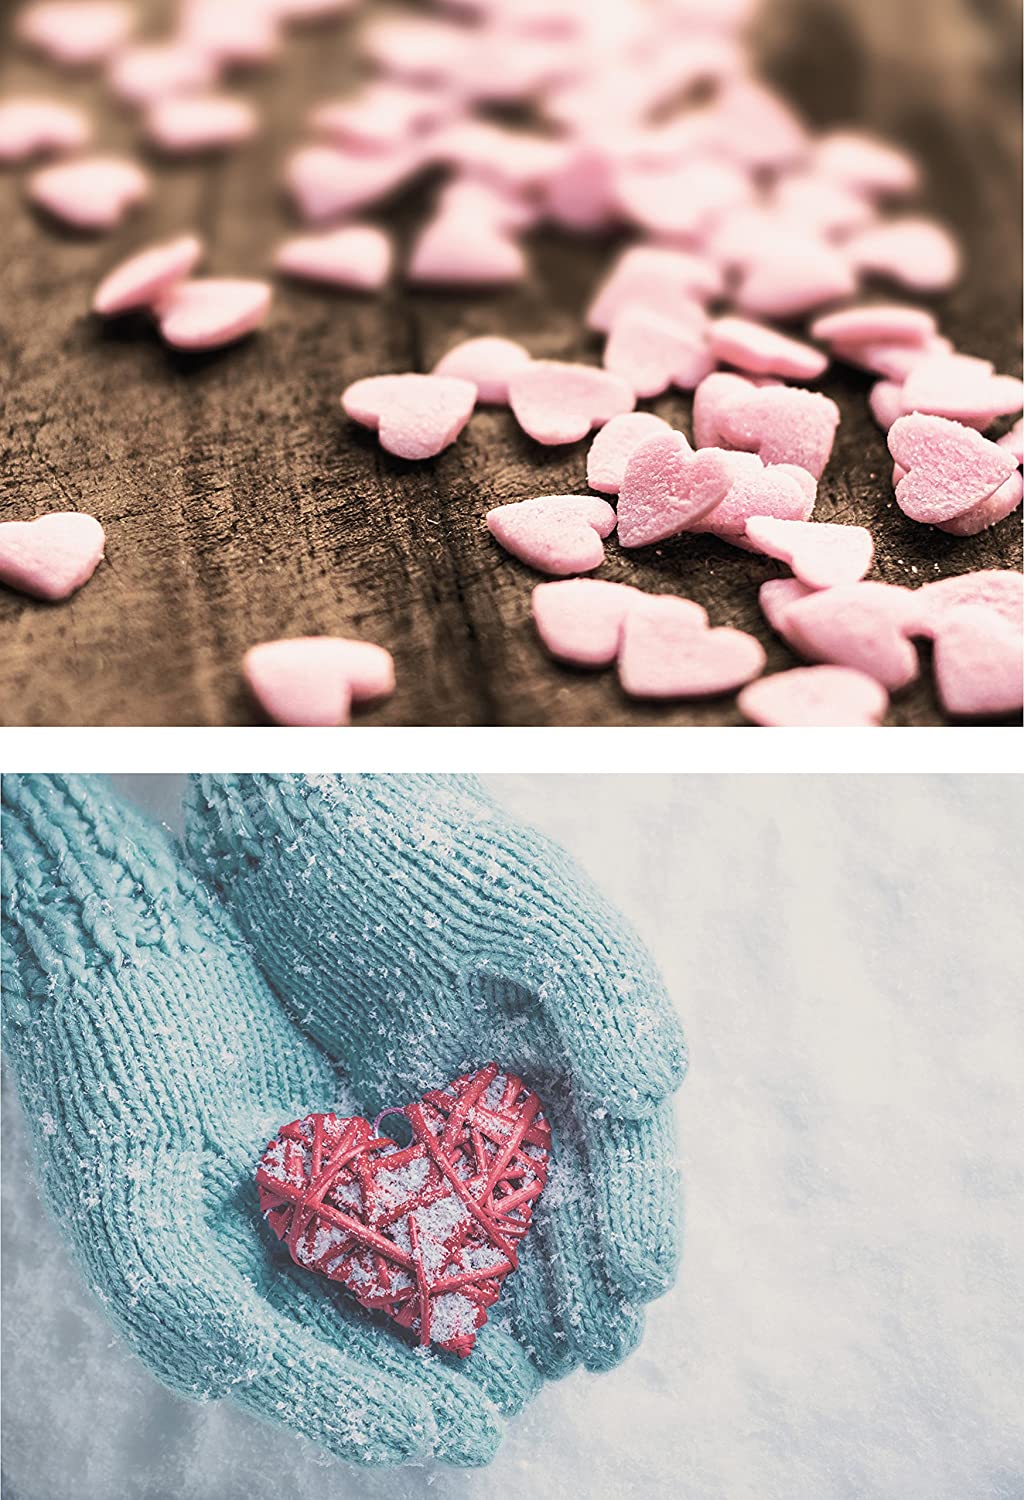 20 Liebes-postkarten im Set (10 Motive mit jeweils 2 Postkarten), Love-cards, Liebe, Herzen, Hochzeit